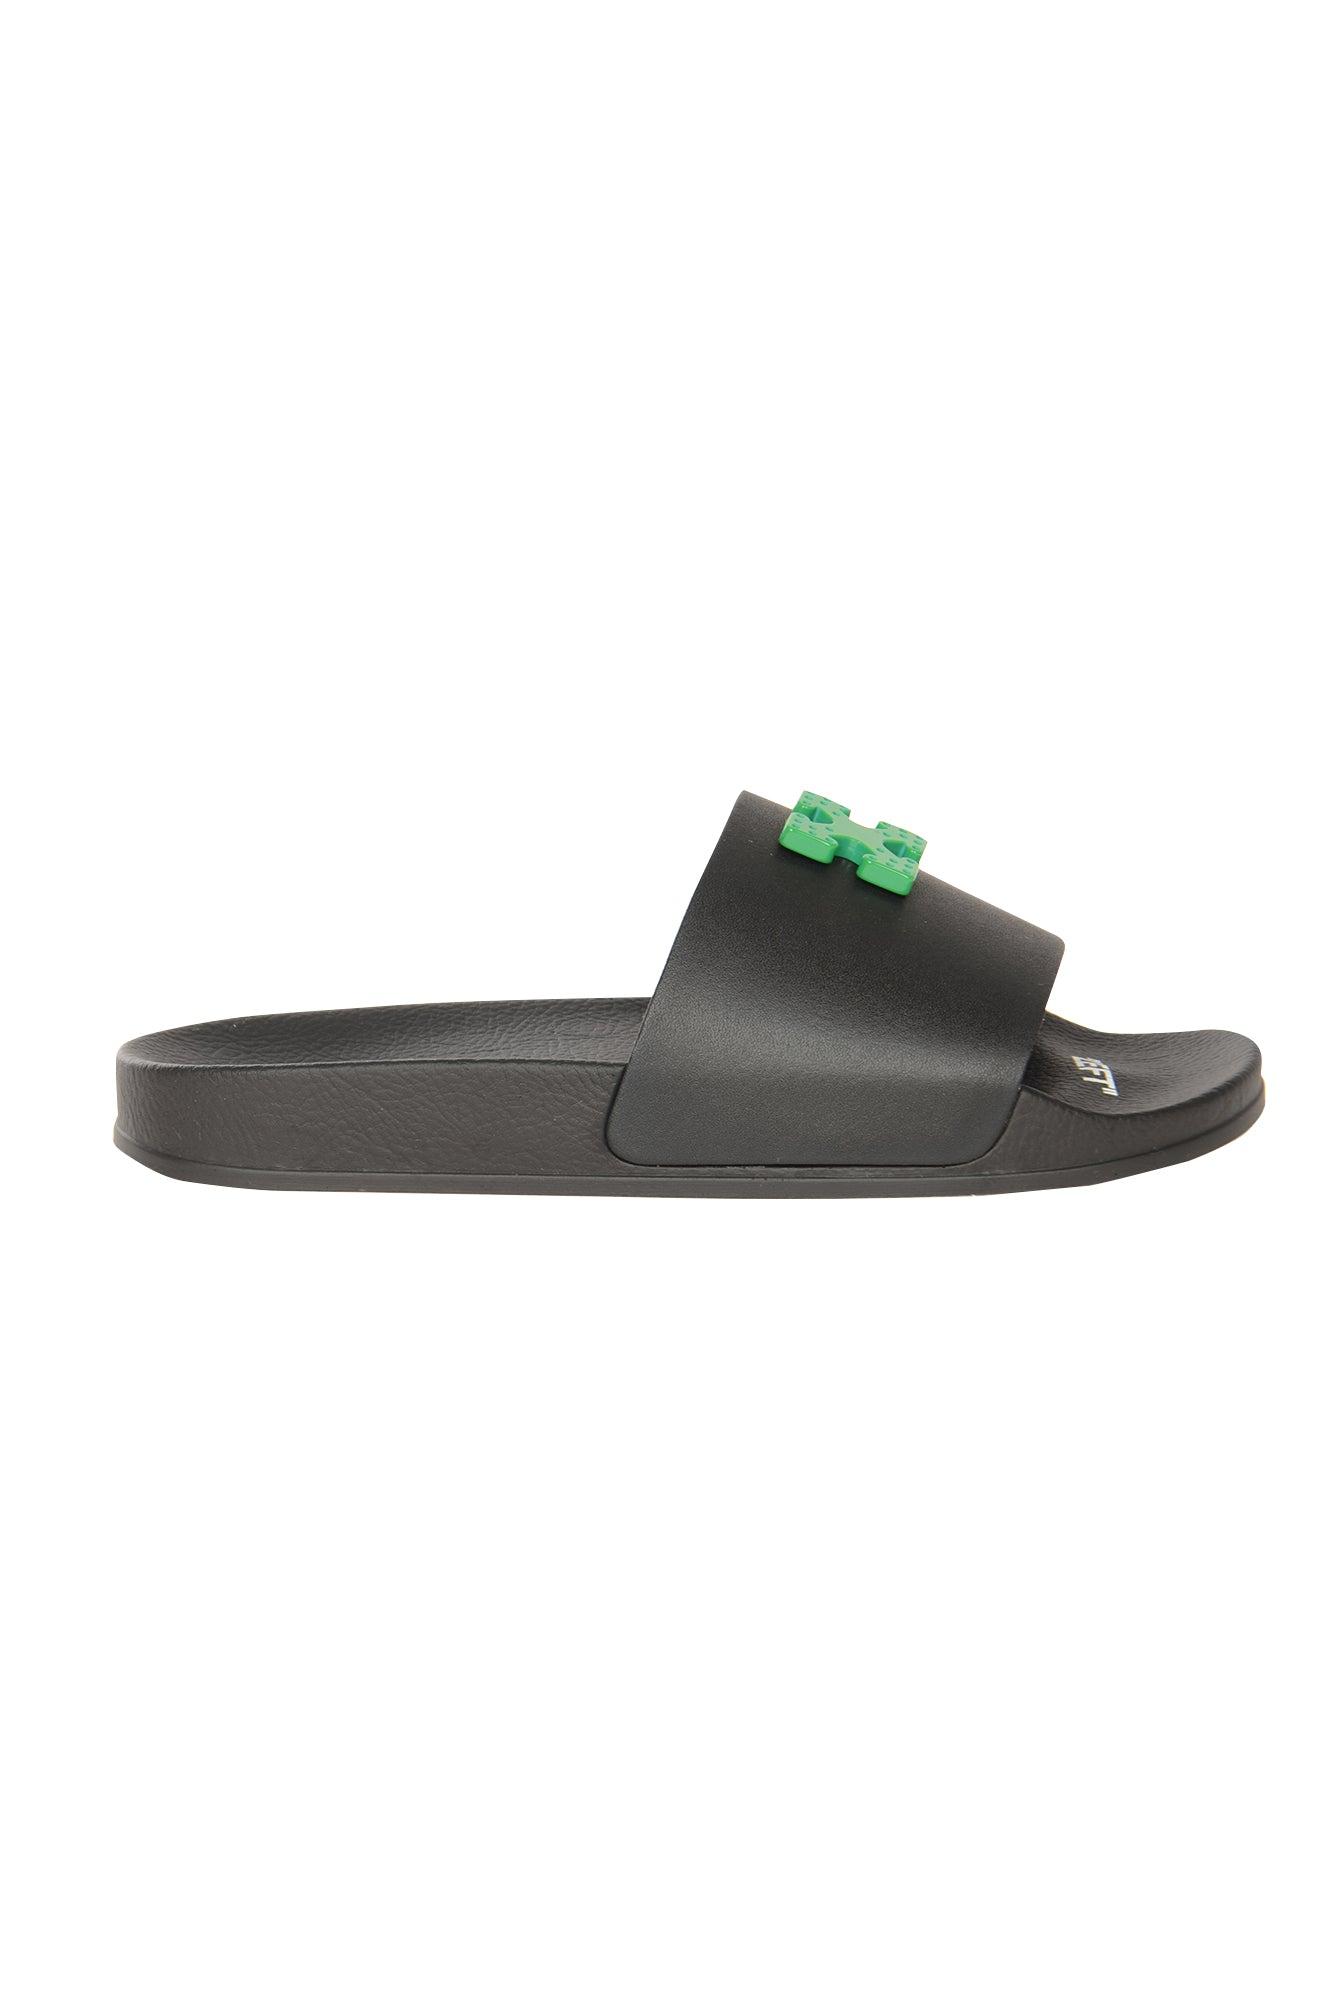 for Men slides and flip flops Leather sandals Mens Shoes Sandals Off-White c/o Virgil Abloh Rubber Sandals in Black Green 